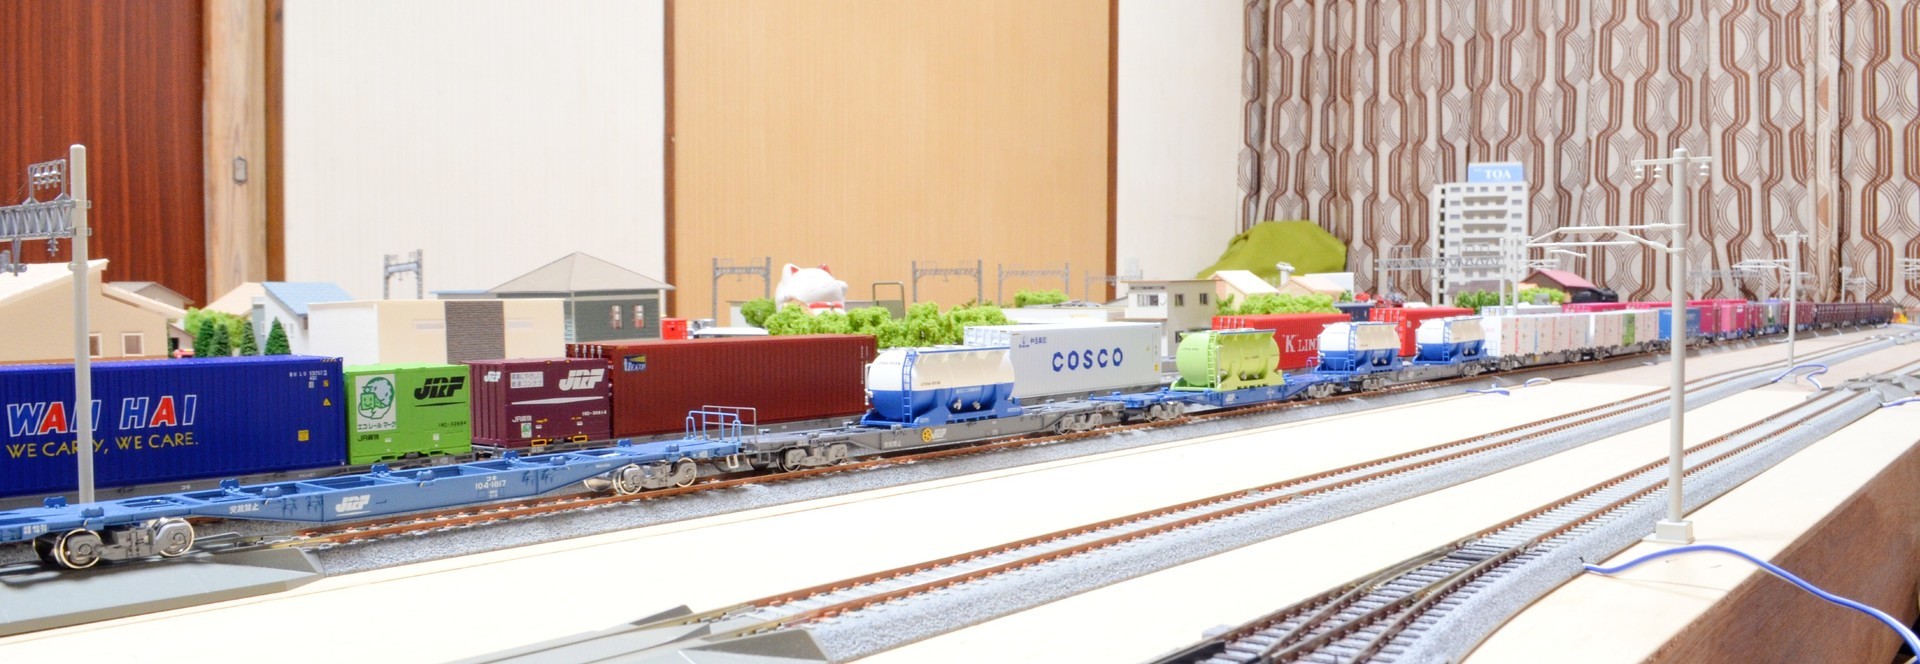 JR貨物 20Dコンテナ モデルアイコン 736A5、736A6、736A7: ゆるりと遊ぶ16番ゲージ鉄道模型